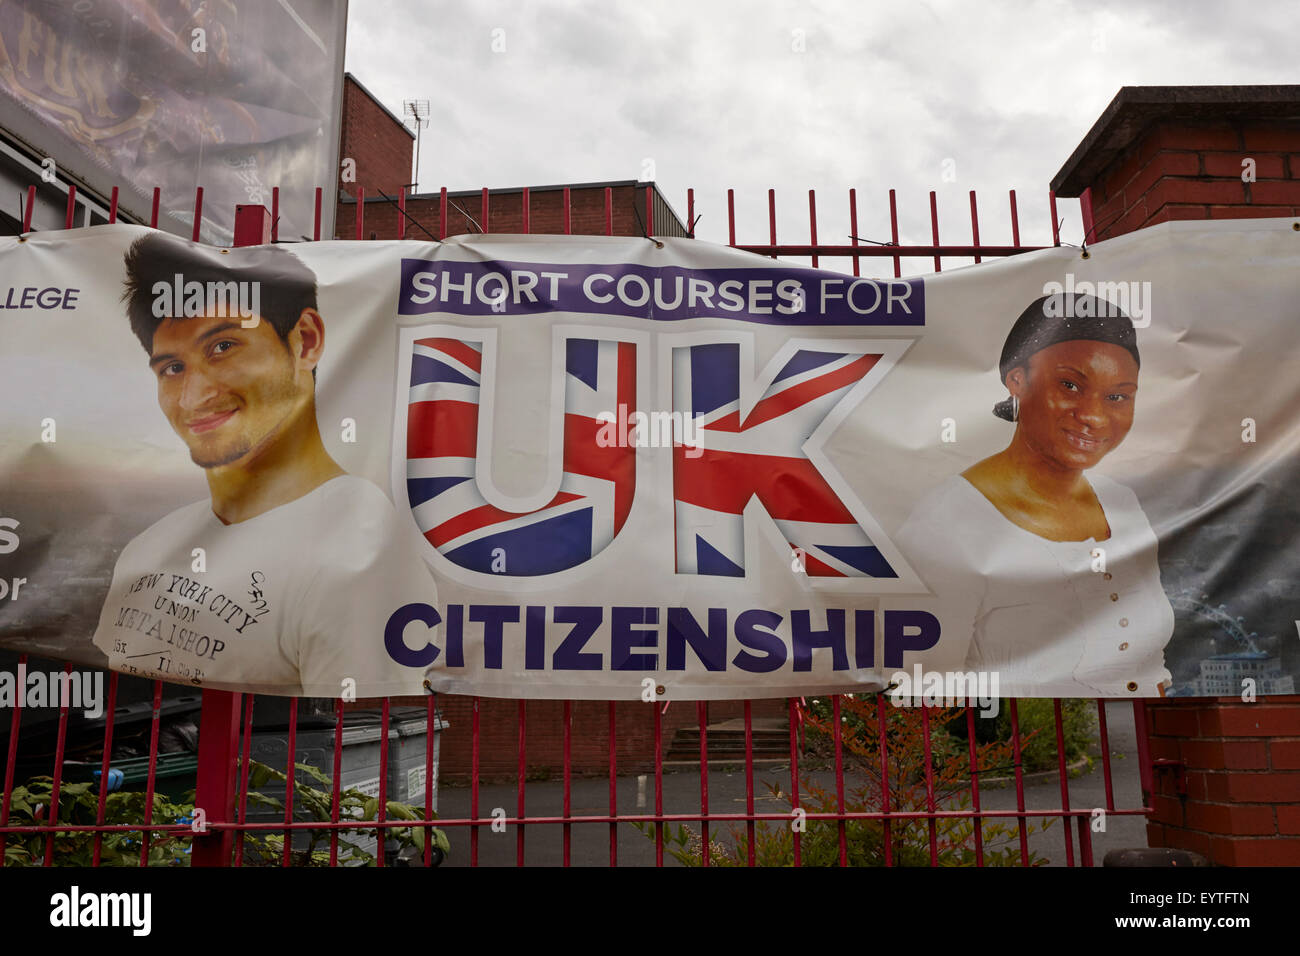 Publicité pour des stages sur la citoyenneté britannique à Birmingham UK Banque D'Images